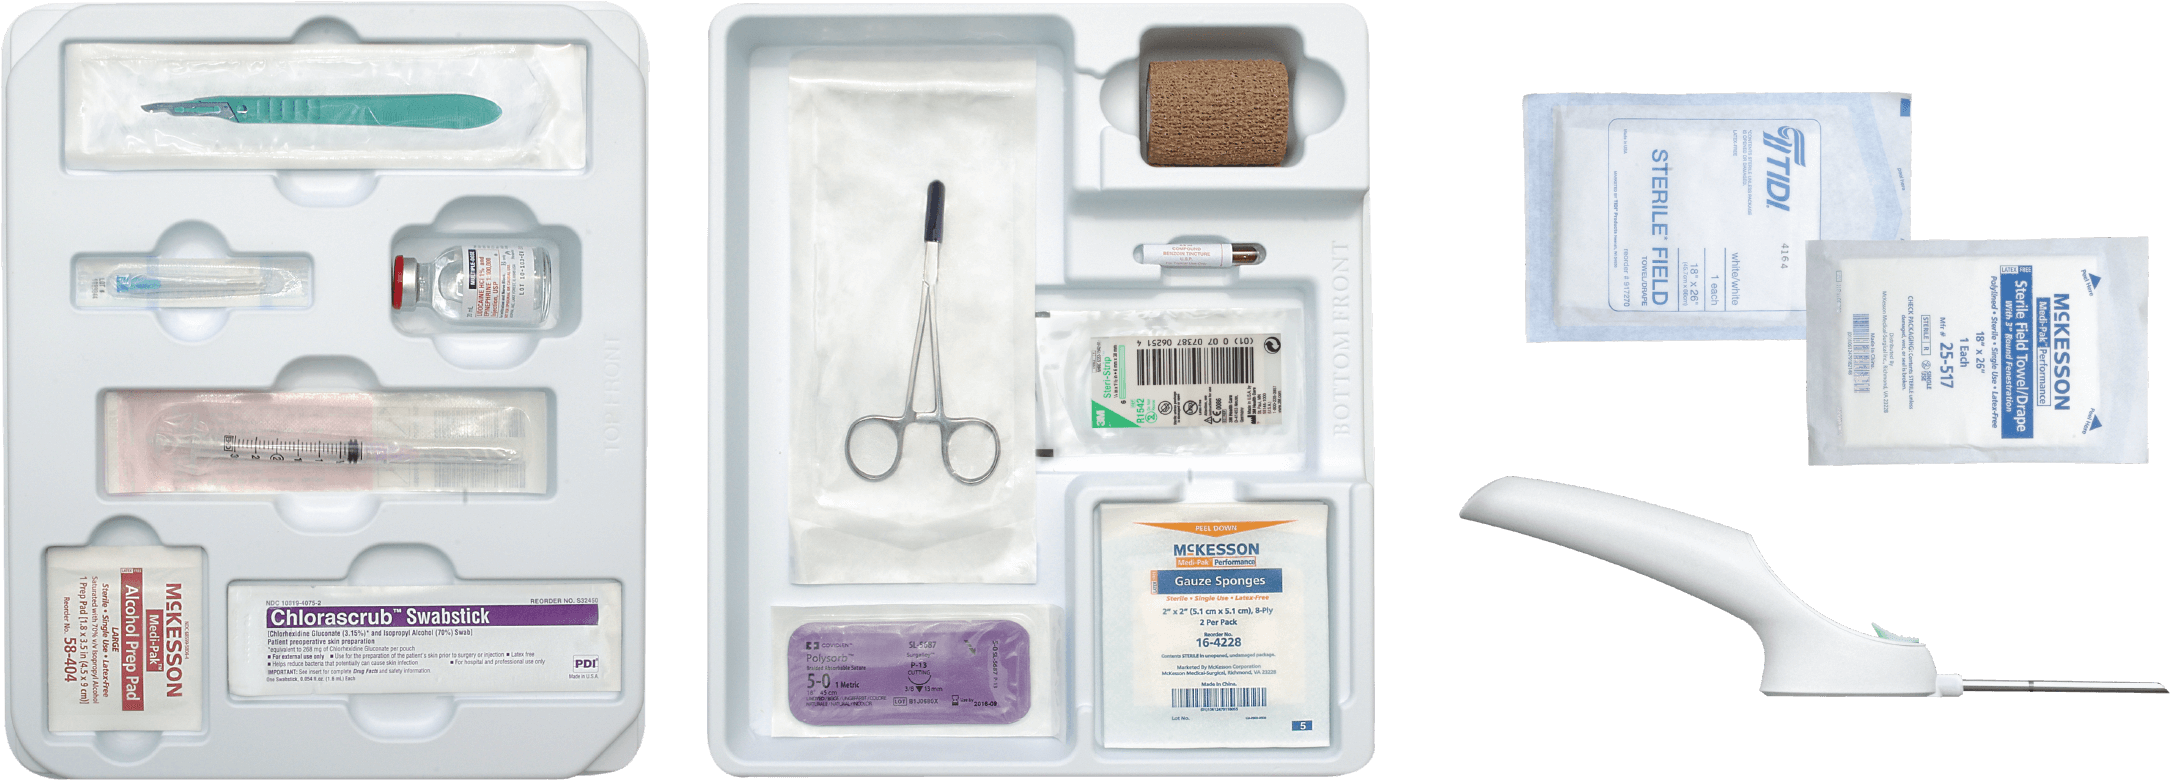 Implantation Kit